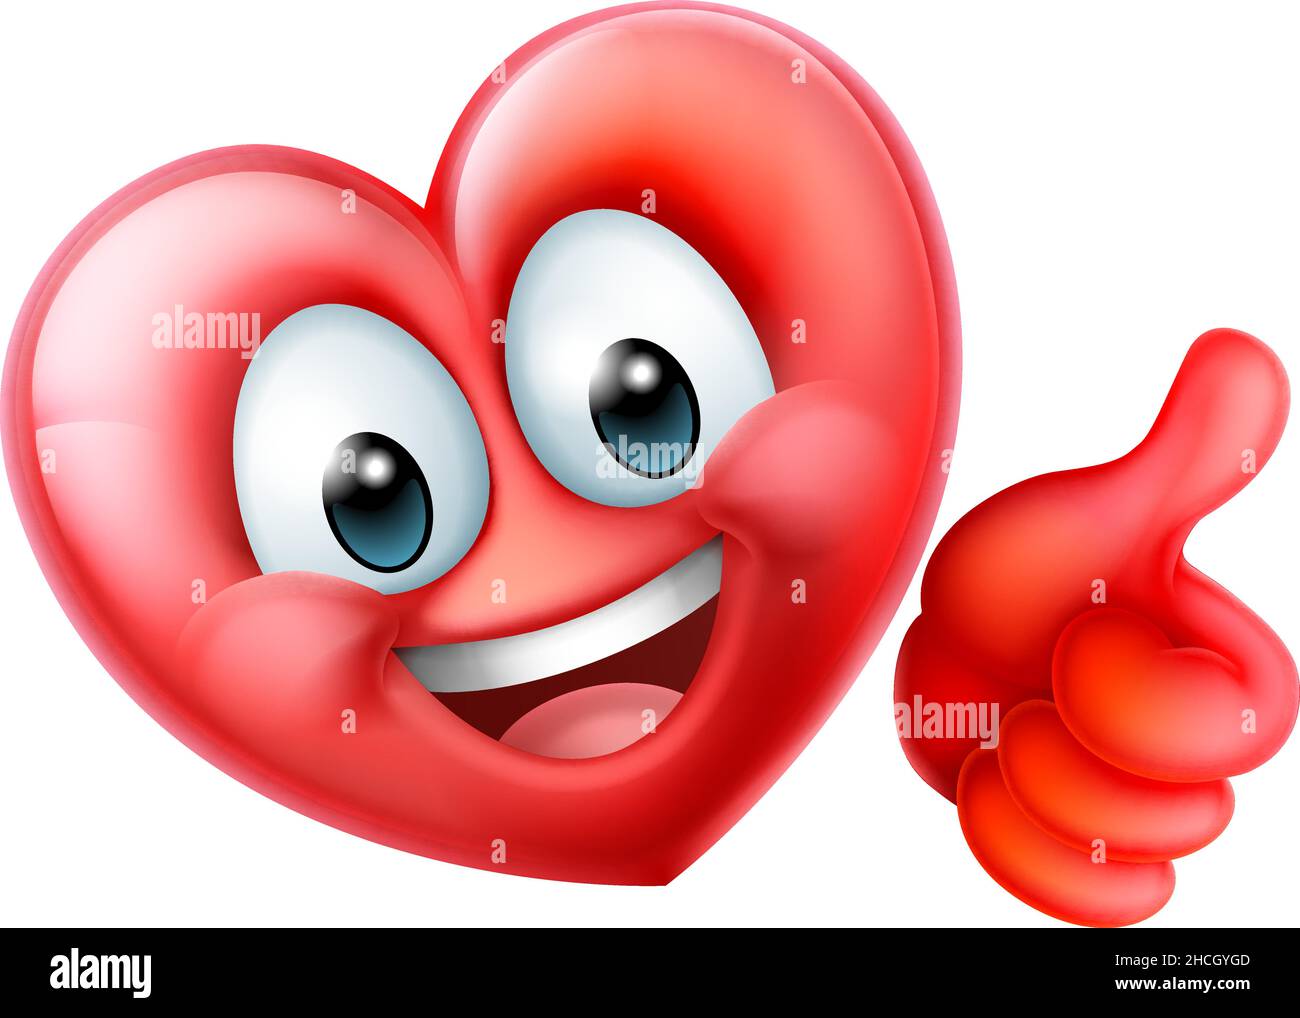 Heart Emoticon Happy Cartoon Mascot Character Stock Vector